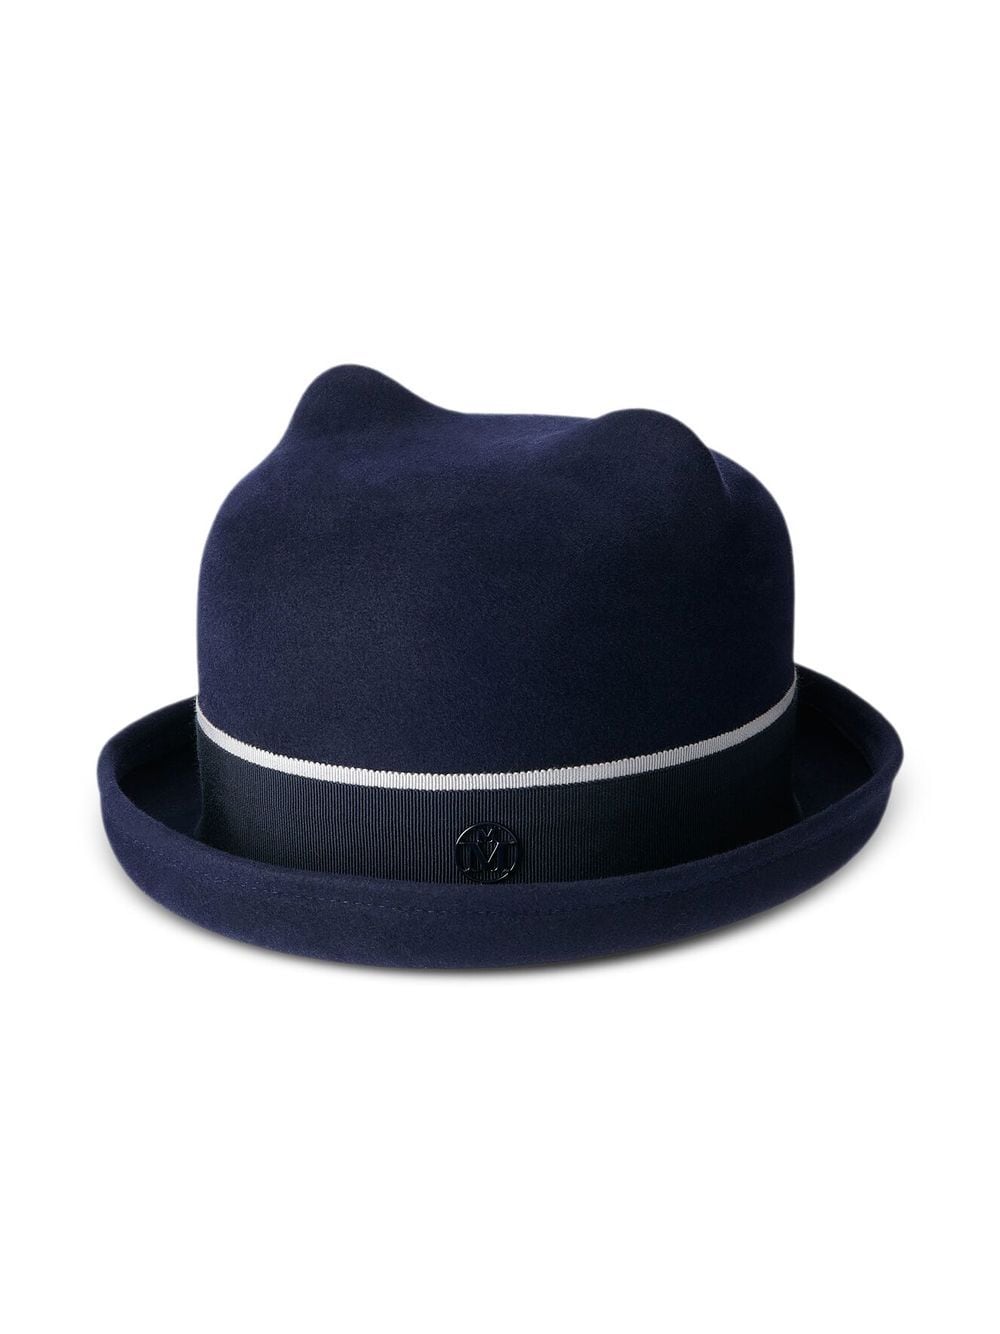 Maison Michel Winnie felted wool hat - Blue von Maison Michel